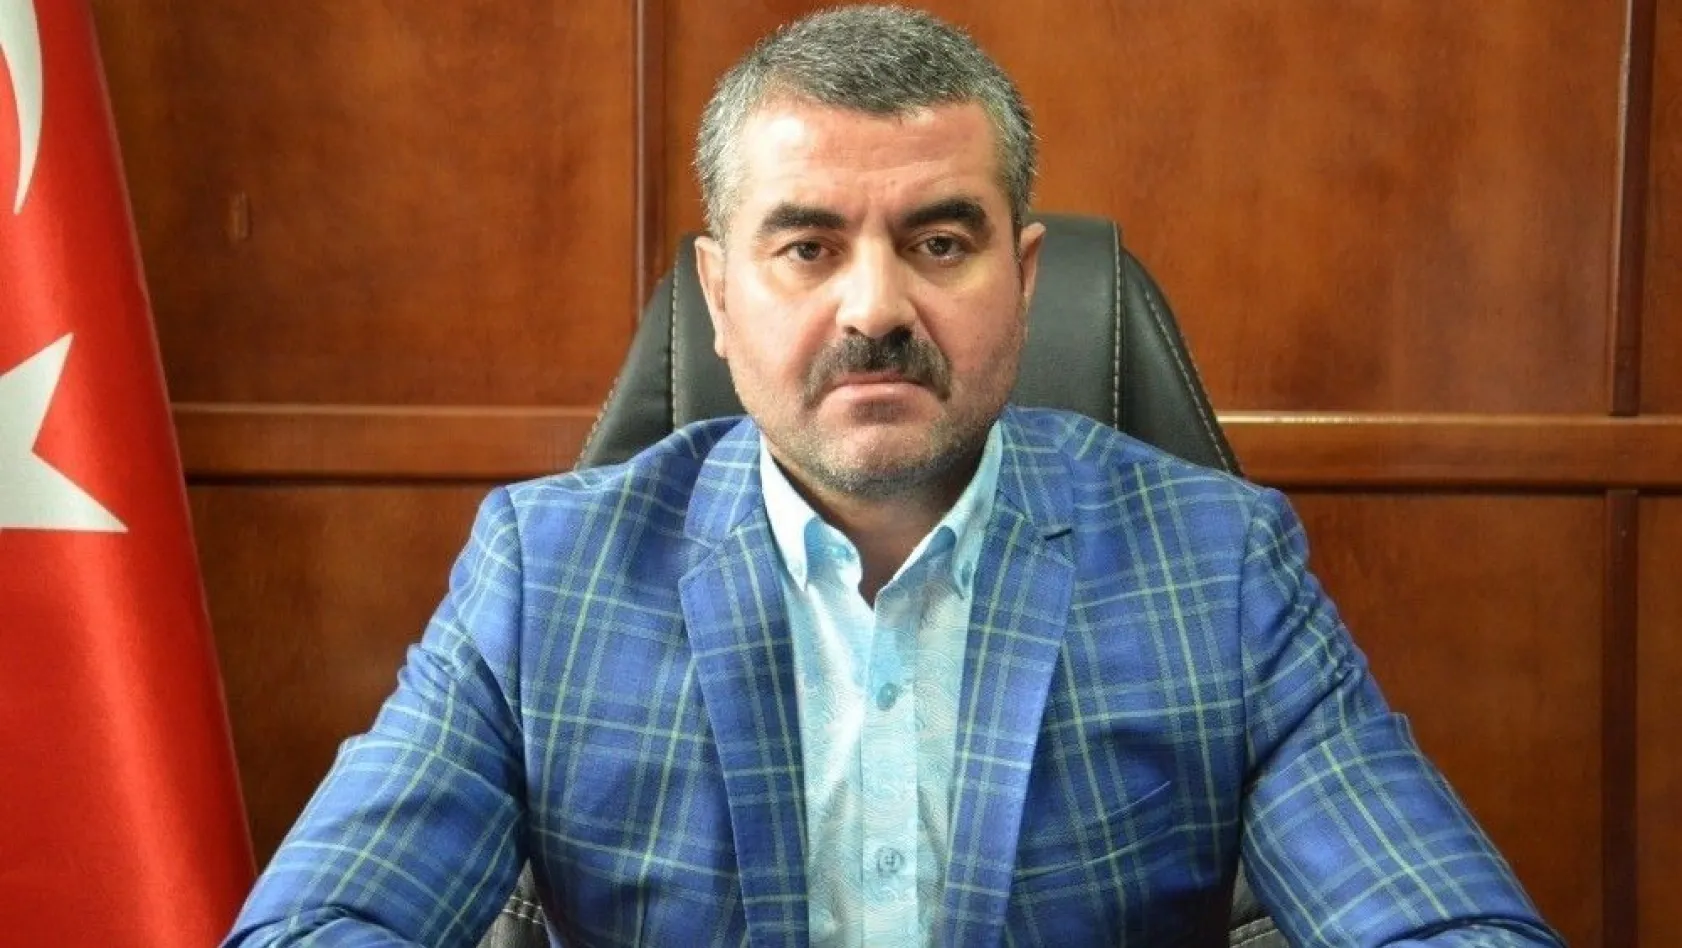 MHP İl Başkanı Avşar'dan Suriyeli mülteci değerlendirmesi
